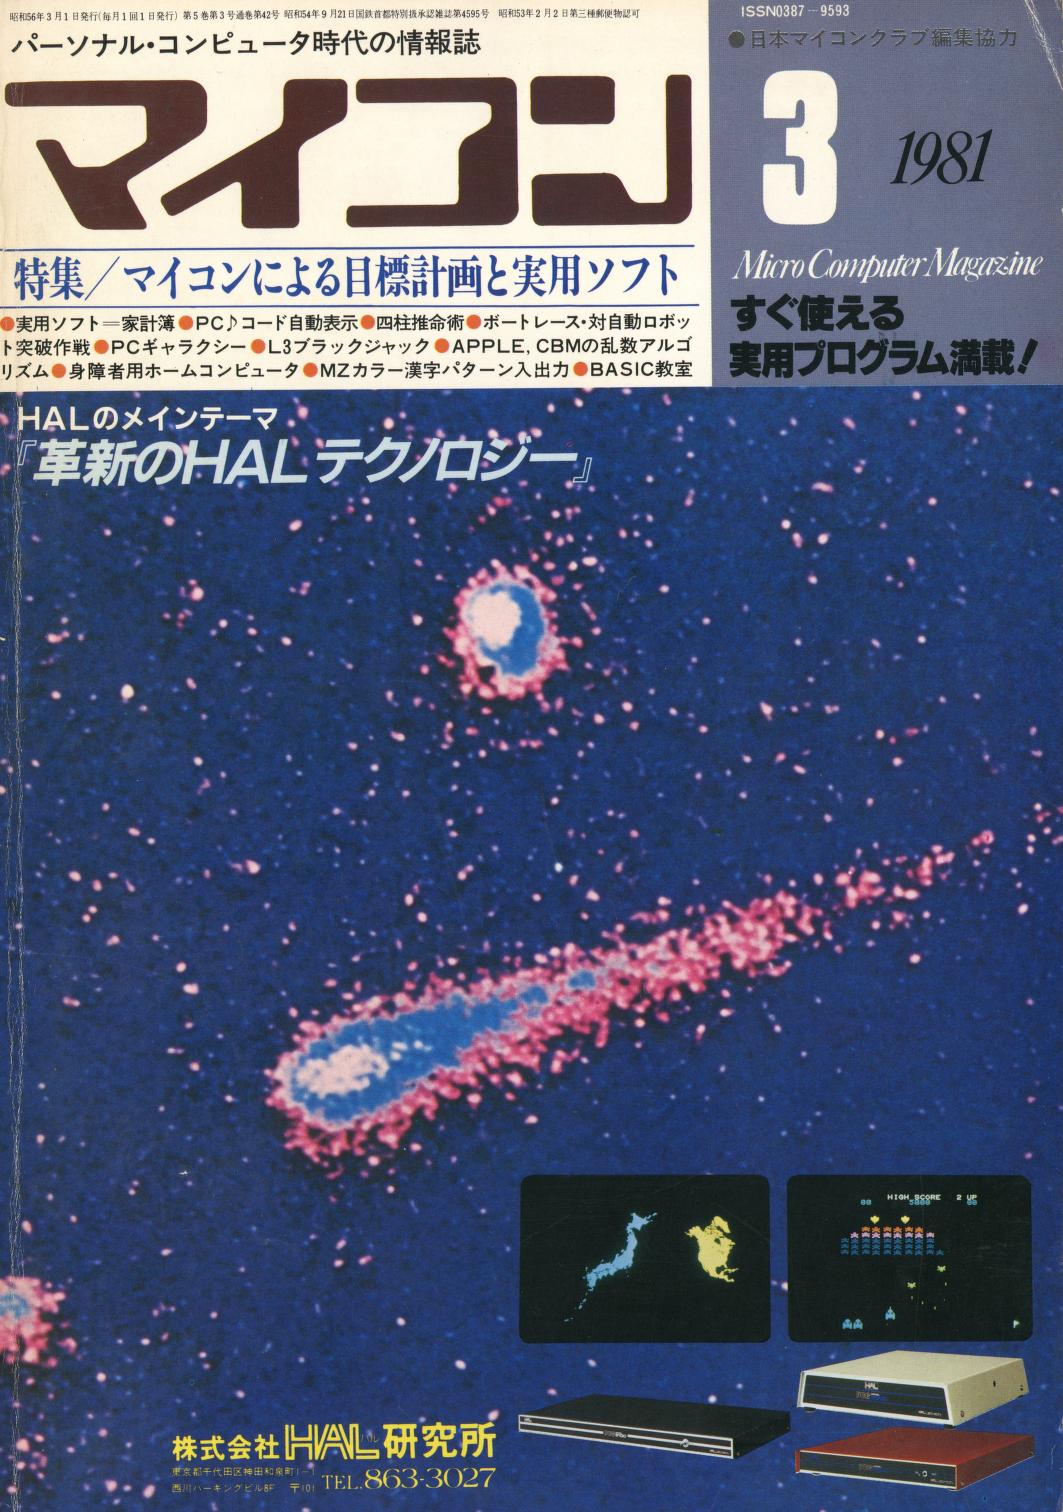 月刊マイコン 1981 03 : Free Download, Borrow, and Streaming 